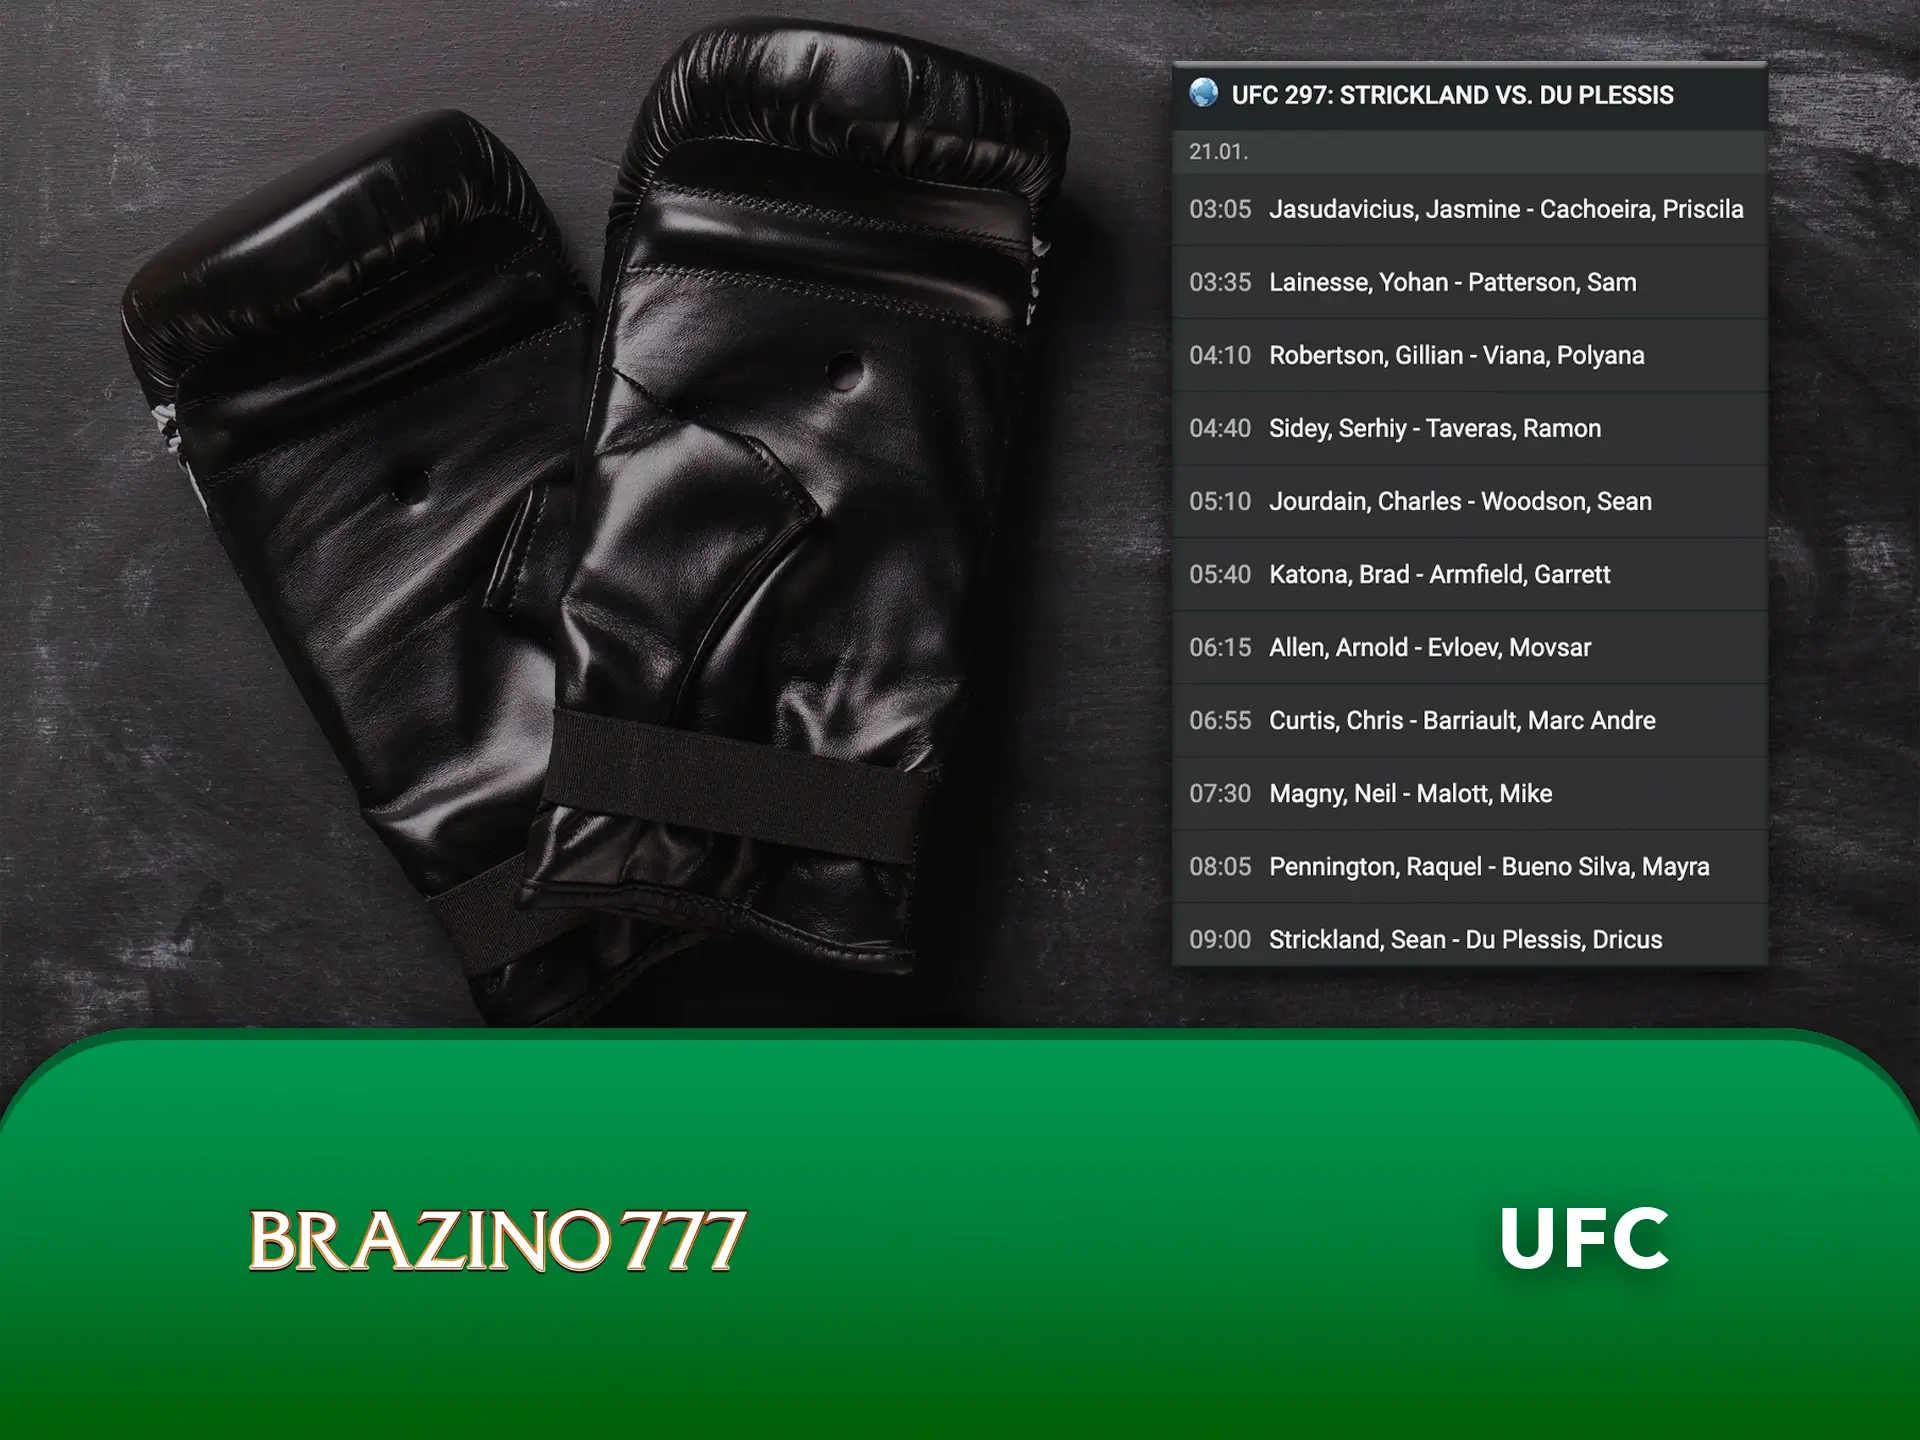 Estrelas e lutadores lendários aguardam as suas apostas no UFC no Casino Brazino777.